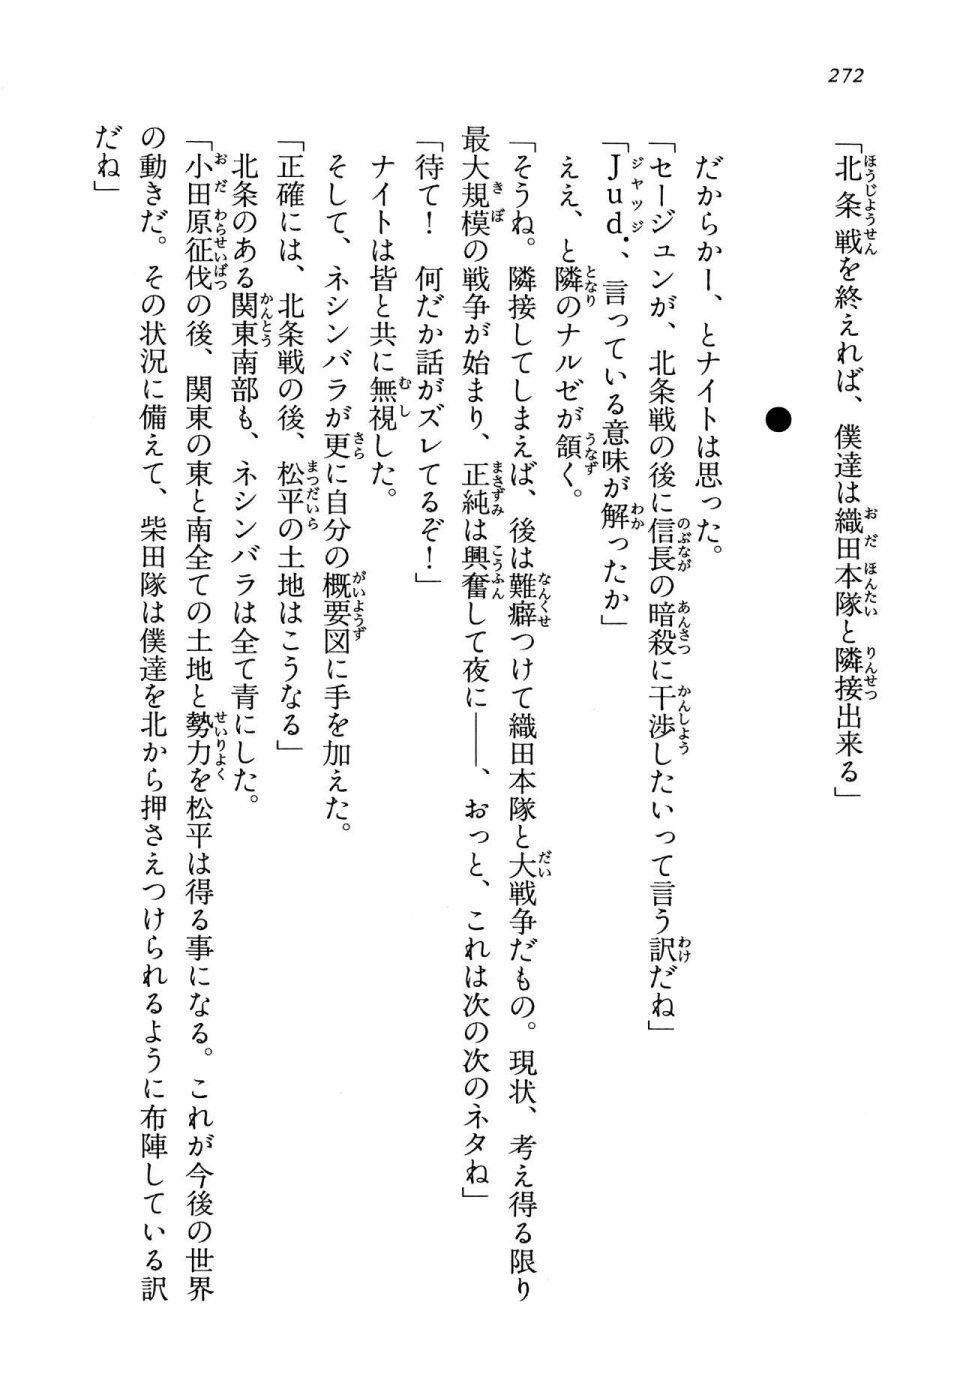 Kyoukai Senjou no Horizon LN Vol 13(6A) - Photo #272